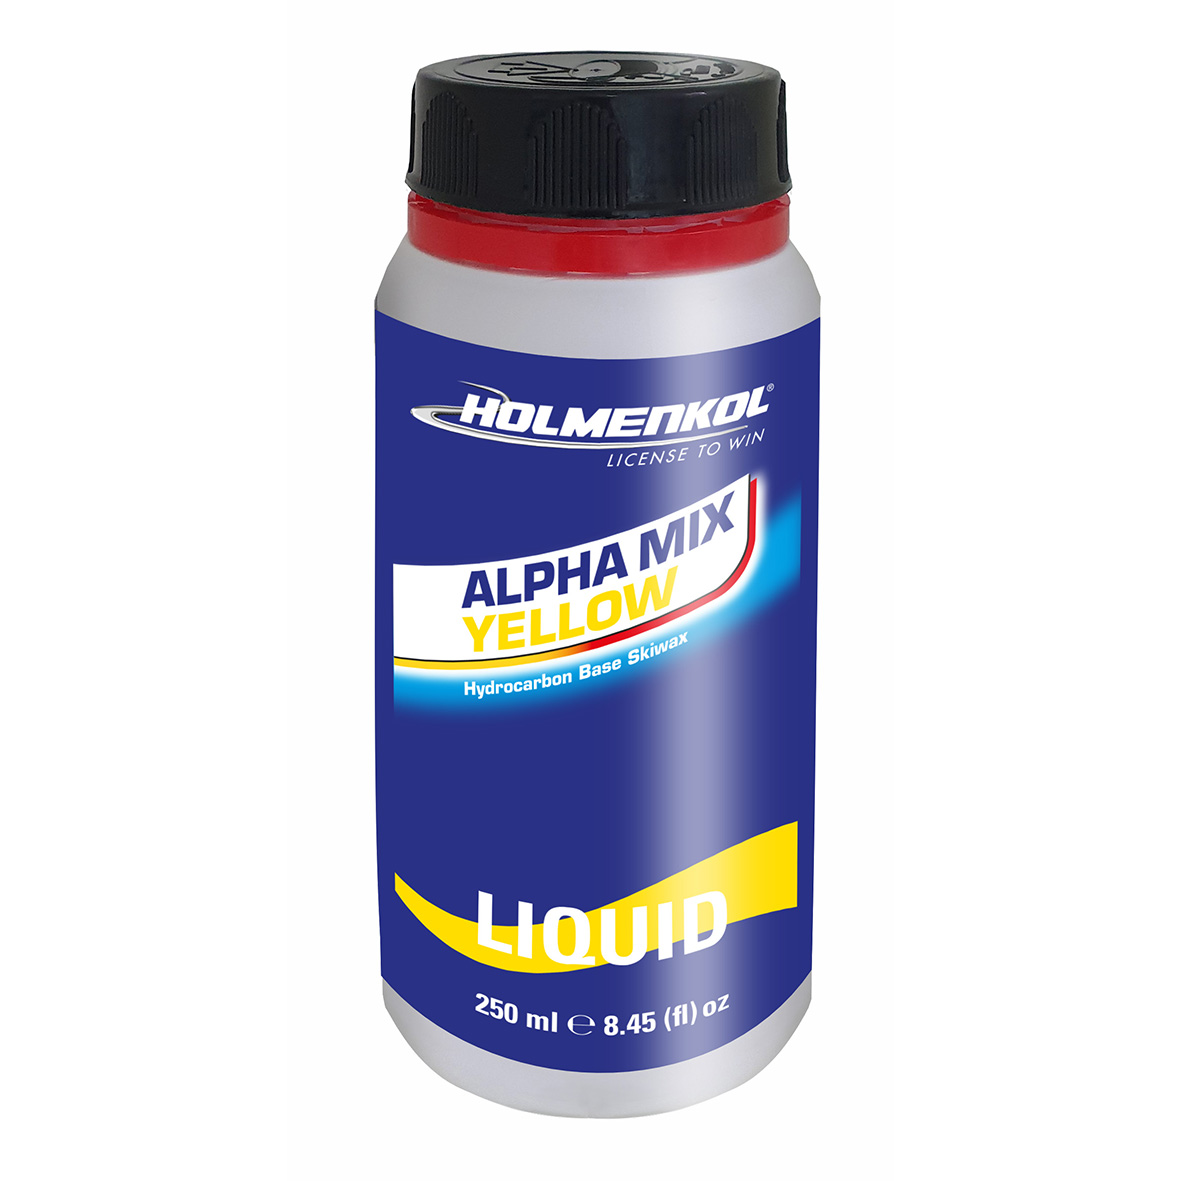 Alpha Mix Yellow Liquid